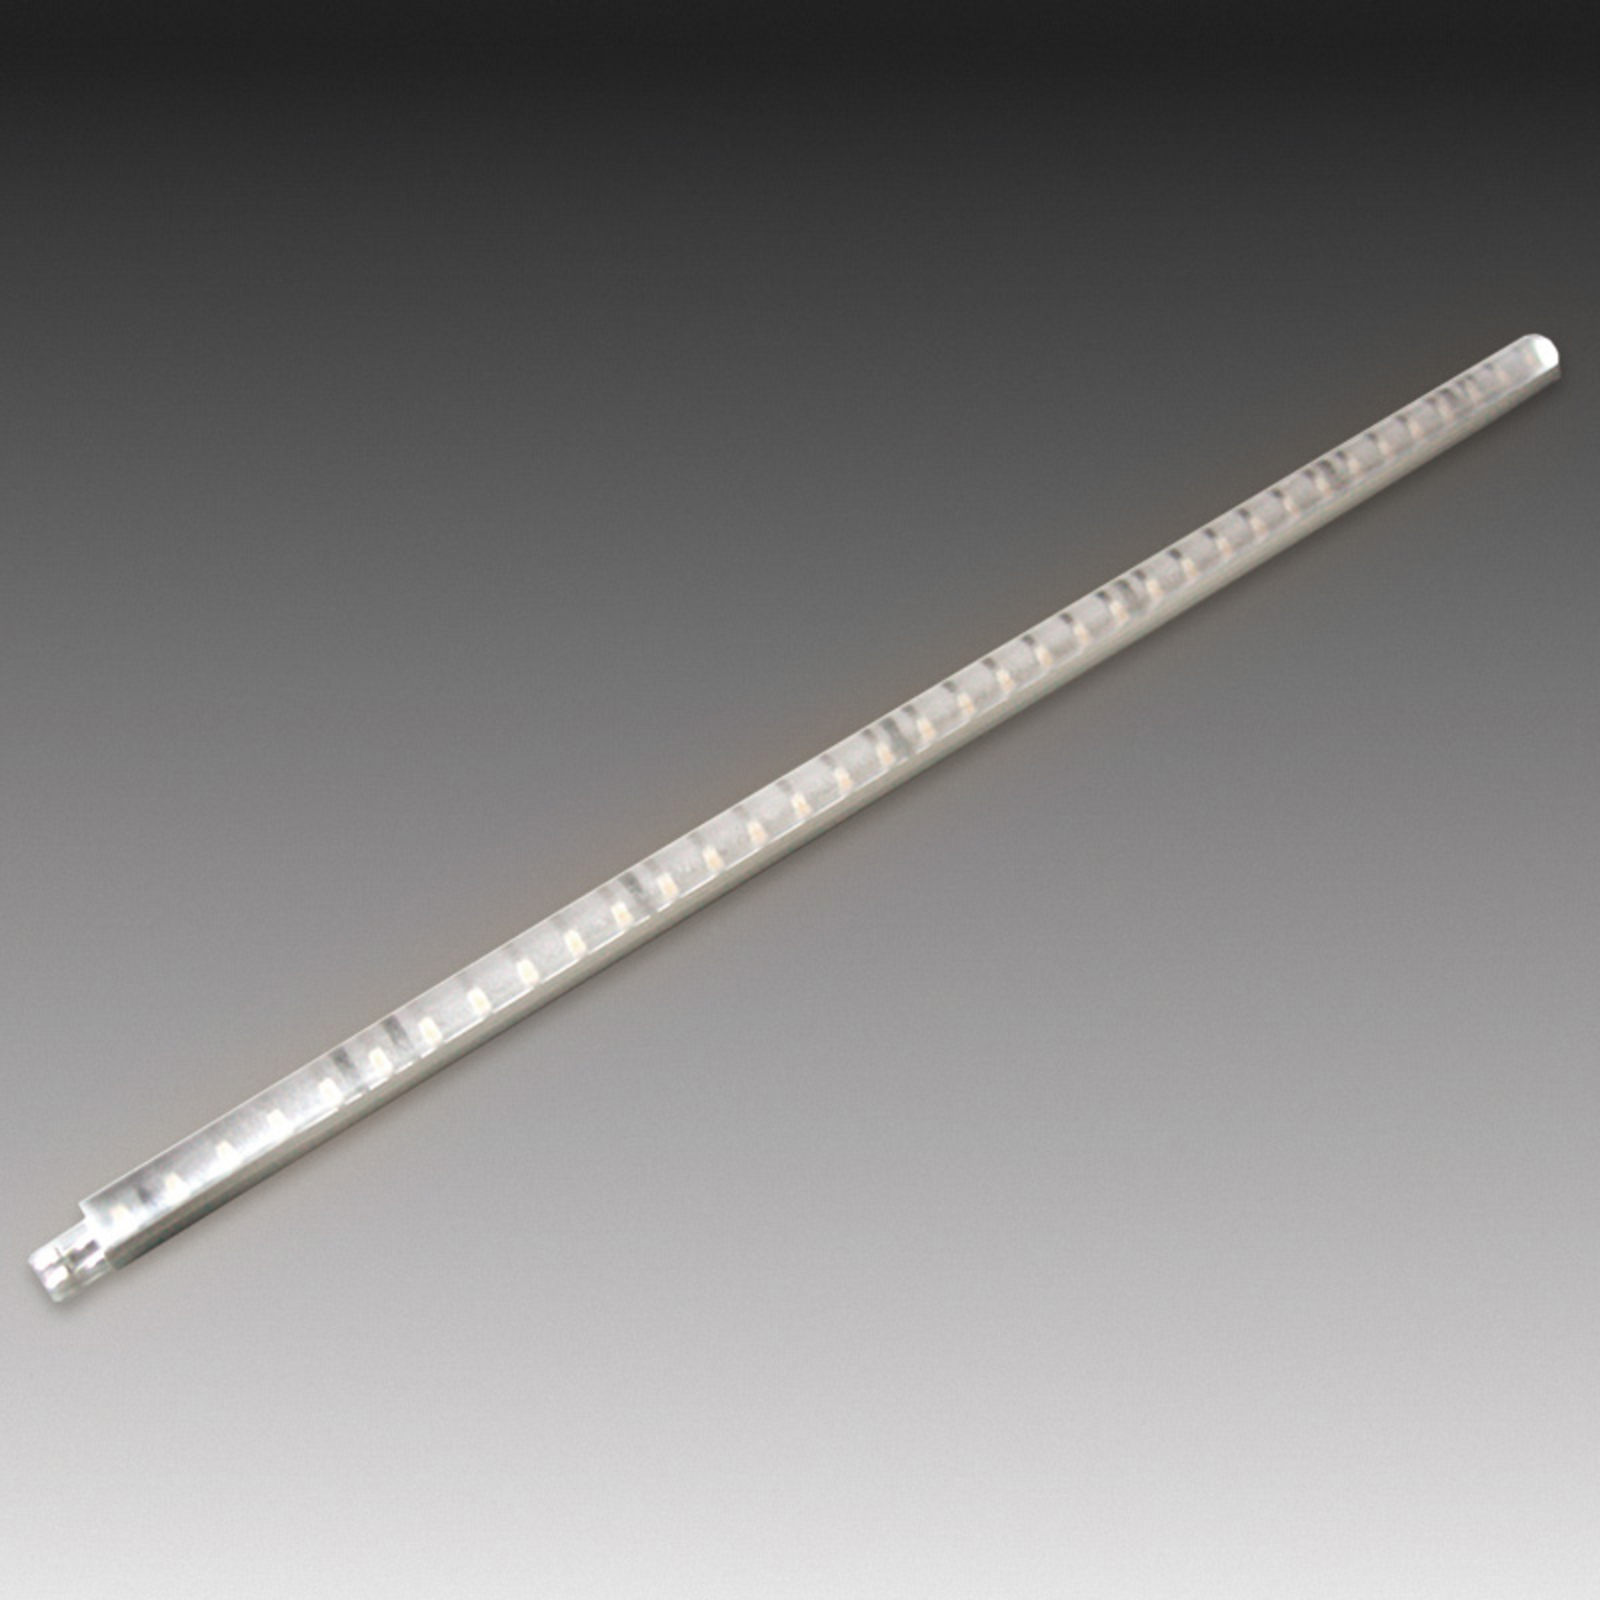 Tige LED Stick 2 pour meuble, 30 cm, blanc chaud